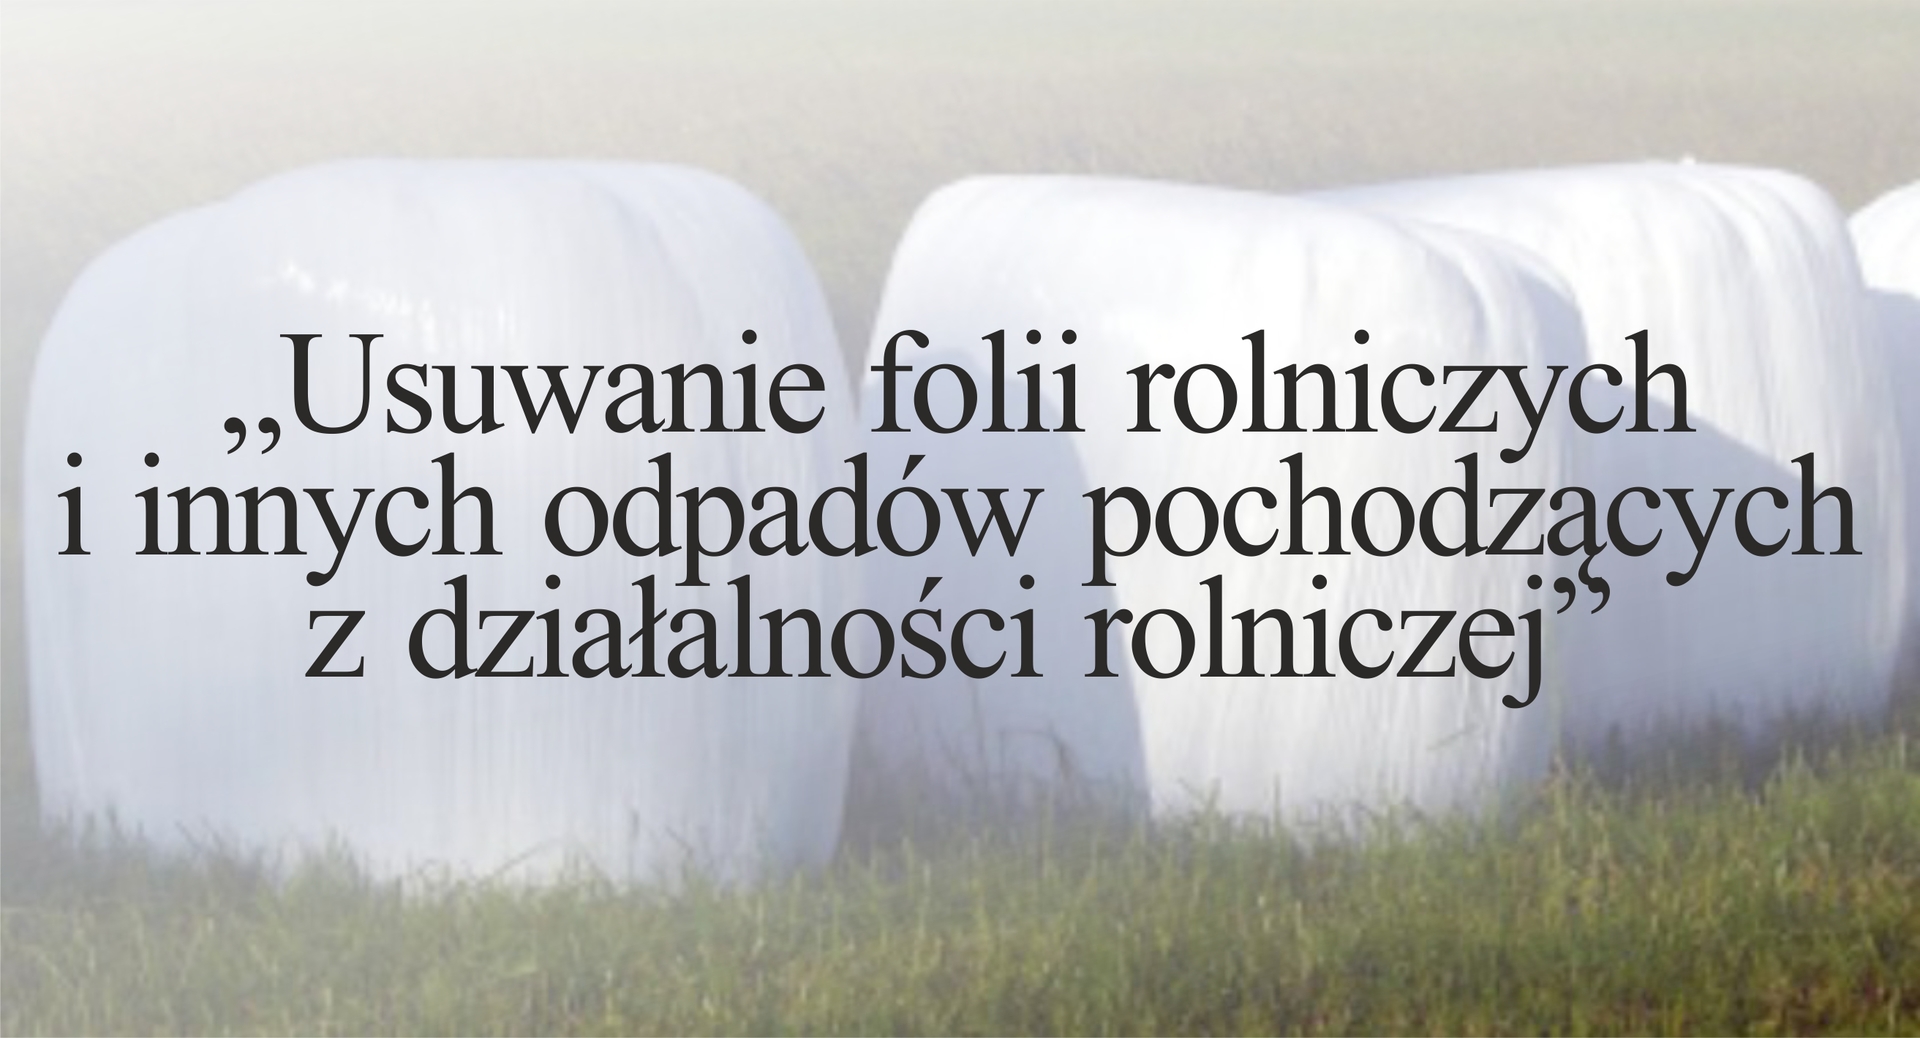 Kolejna akcja usuwania folii rolniczych i innych odpadów pochodzących z działalności rolniczej w Gminie Rząśnia.